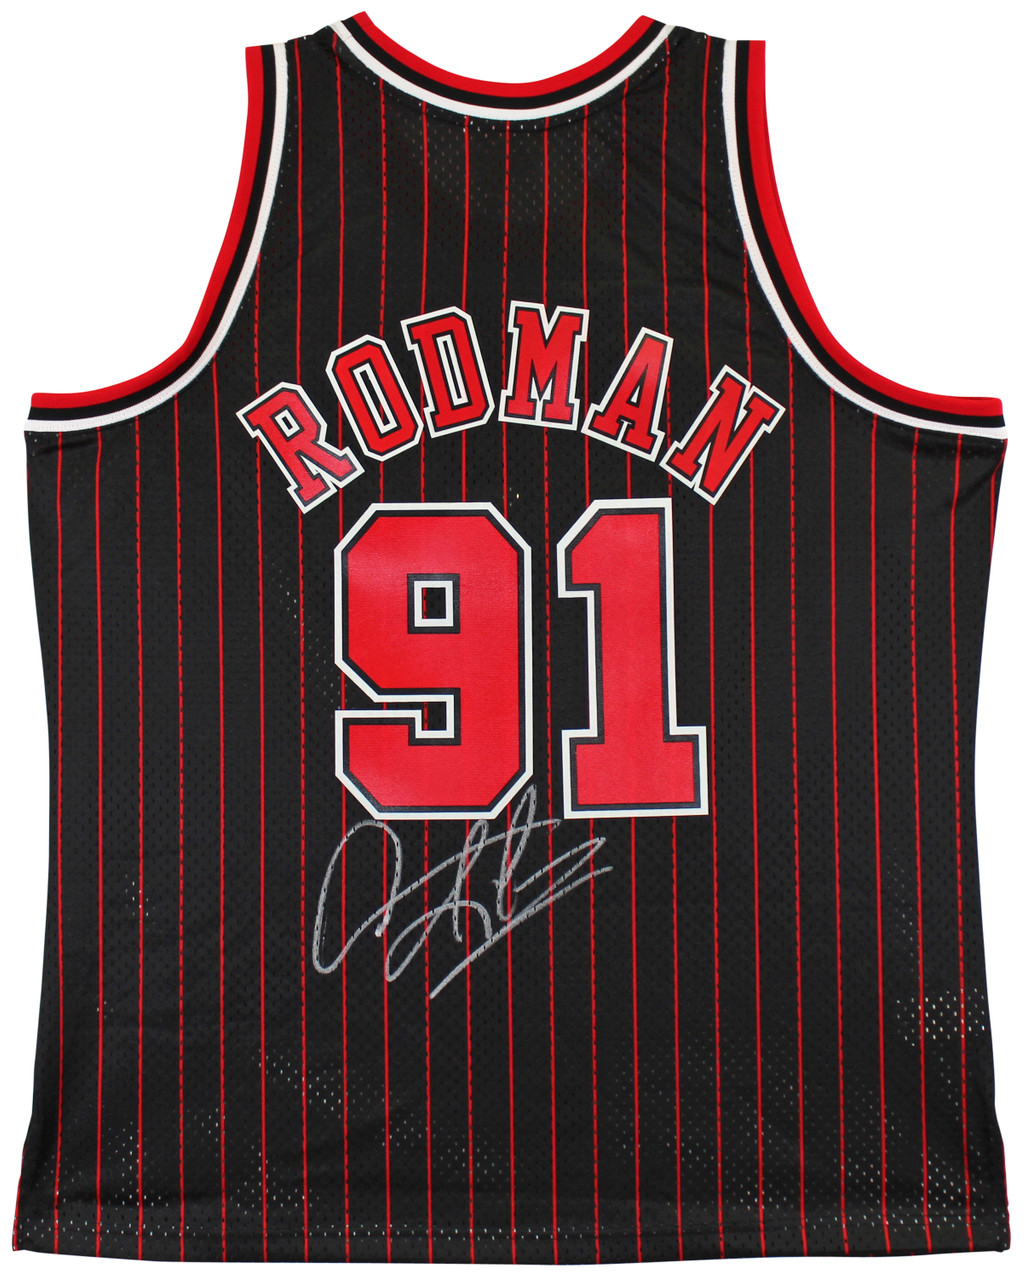  Bulls Dennis Rodman Autographed Red Jersey Beckett BAS